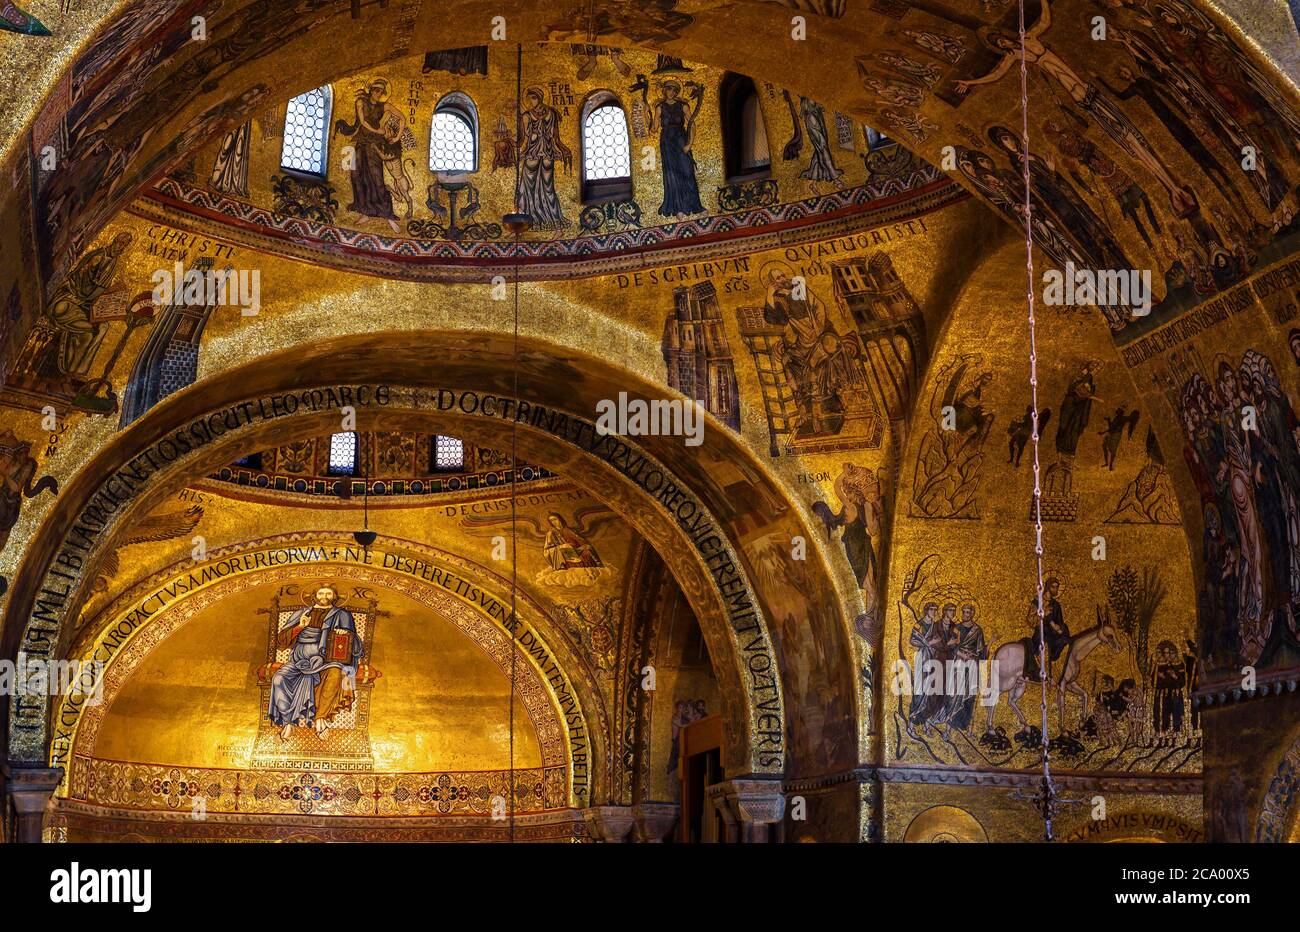 Venedig, Italien - 21. Mai 2017: Goldenes Wandmosaik`s Markusdom oder San Marco in Venedig. Es ist das Wahrzeichen Venedigs. Alte Inneneinrichtung von Famou Stockfoto